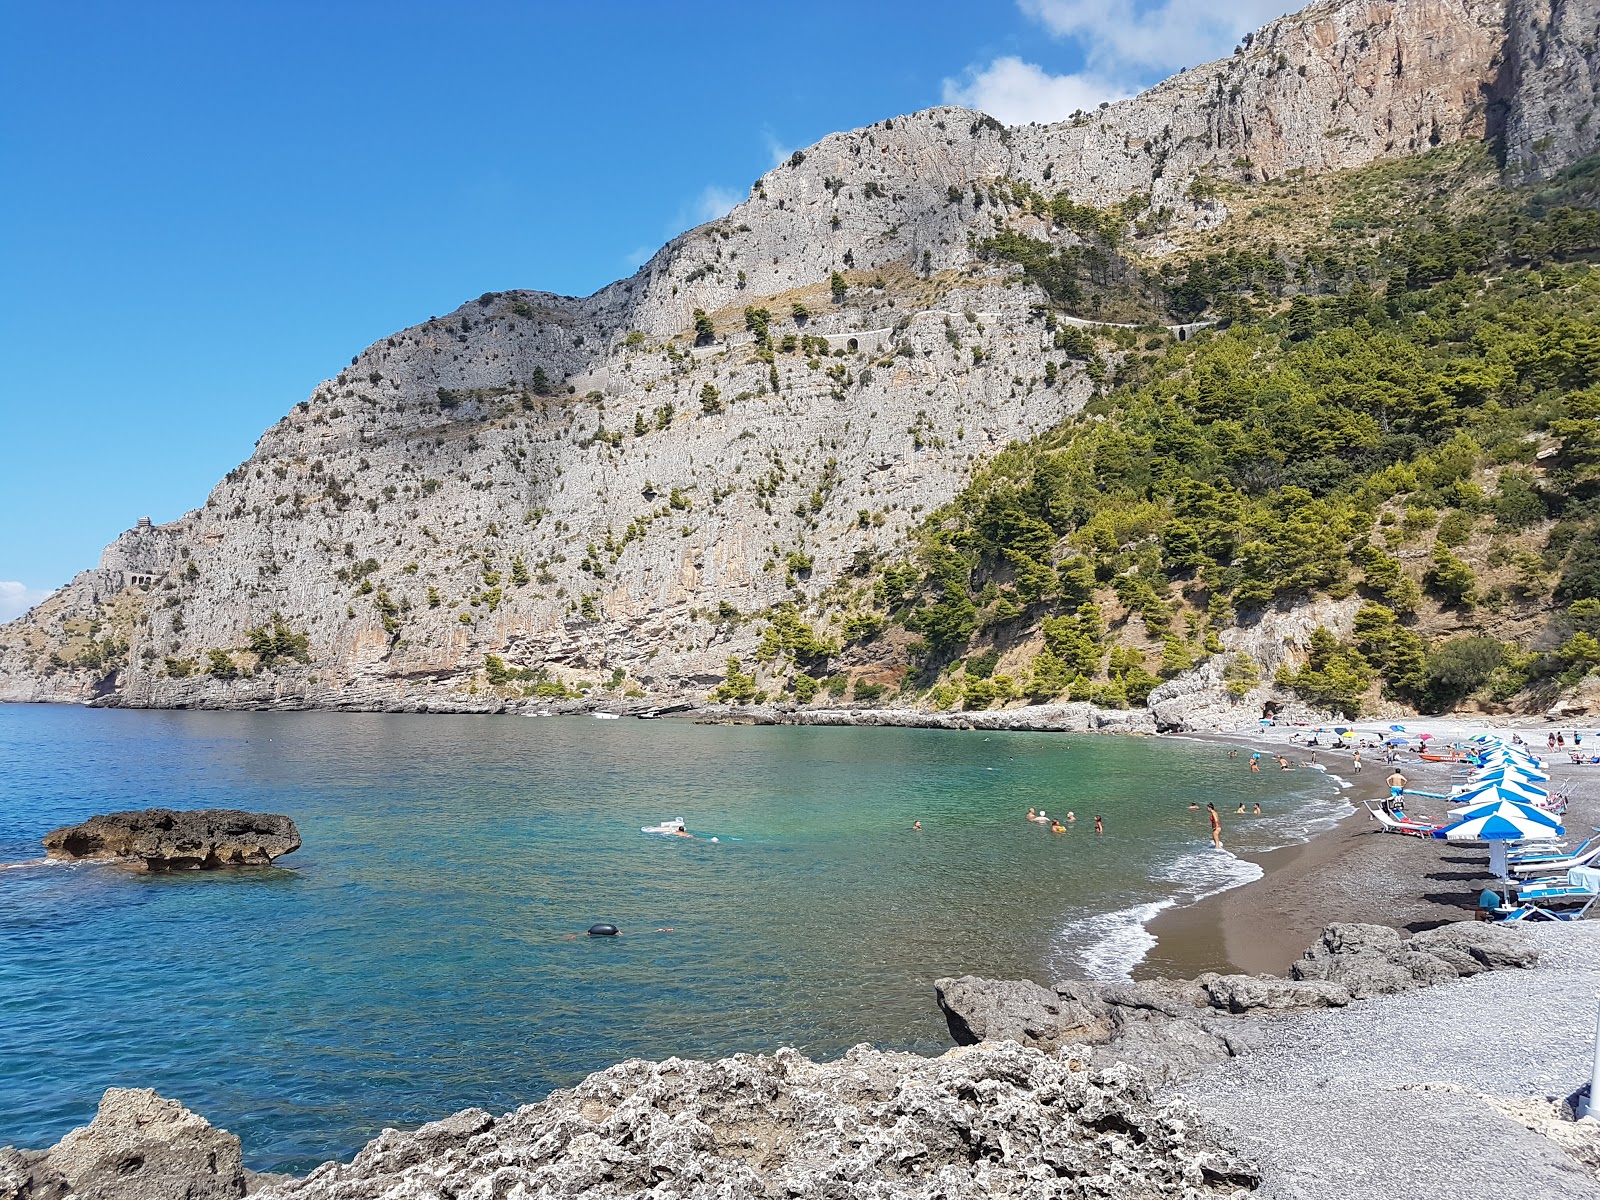 Photo of Spiaggia Acquafredda with brown fine pebble surface